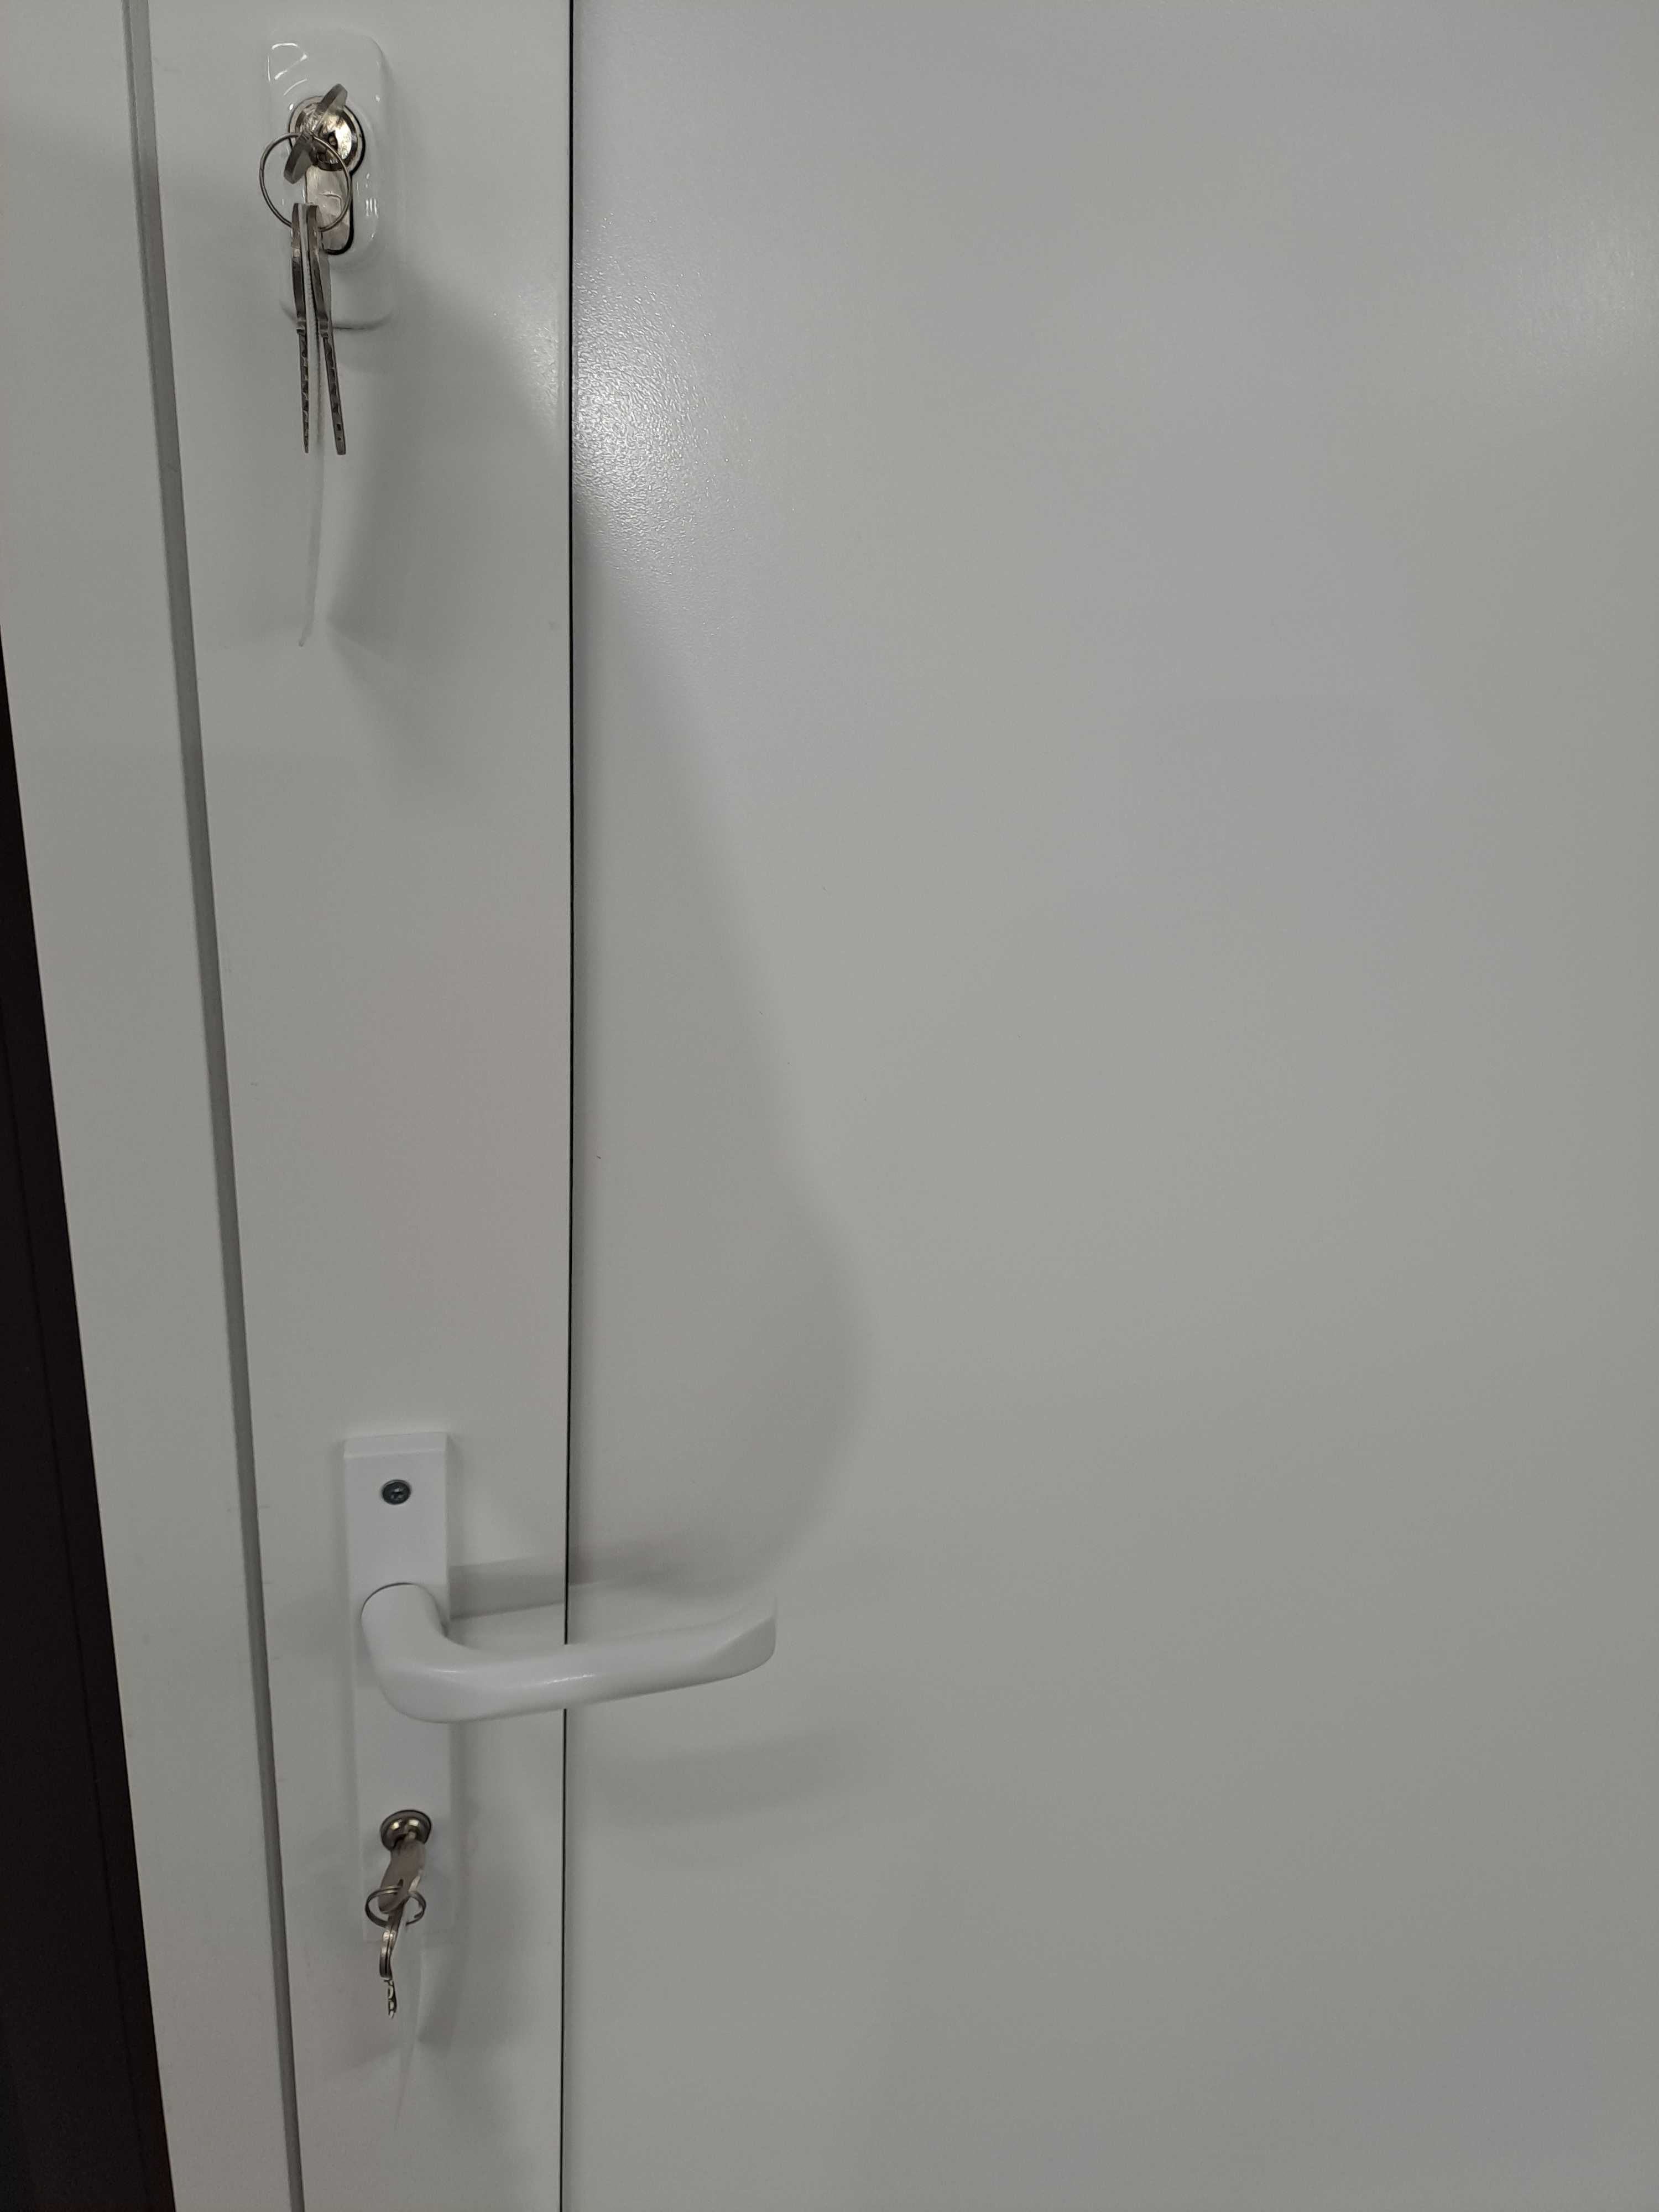 Drzwi panelowe aluminiowe szer 1100 mm x wys 2100 mm